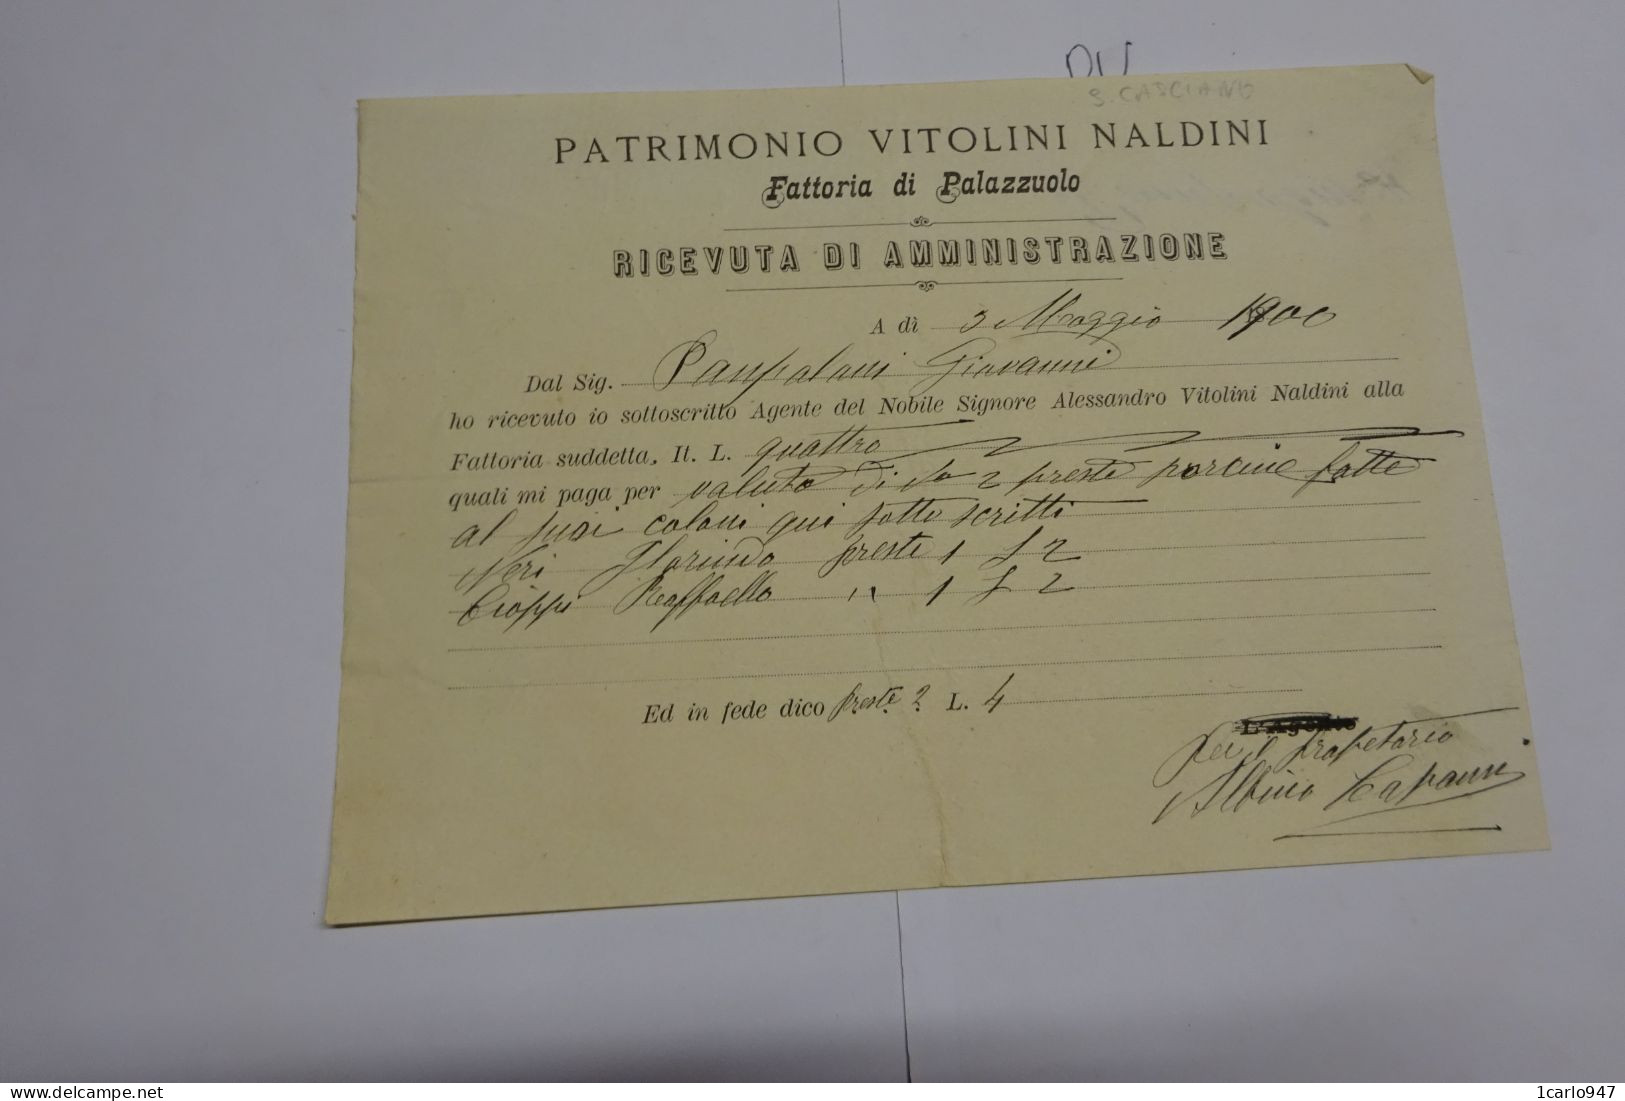 S.CASCIANO  VAL DI PESA  - FIRENZE-- FATTORIA  DI PALAZZUOLO  -- VITOLINI  NALDINI - Italy